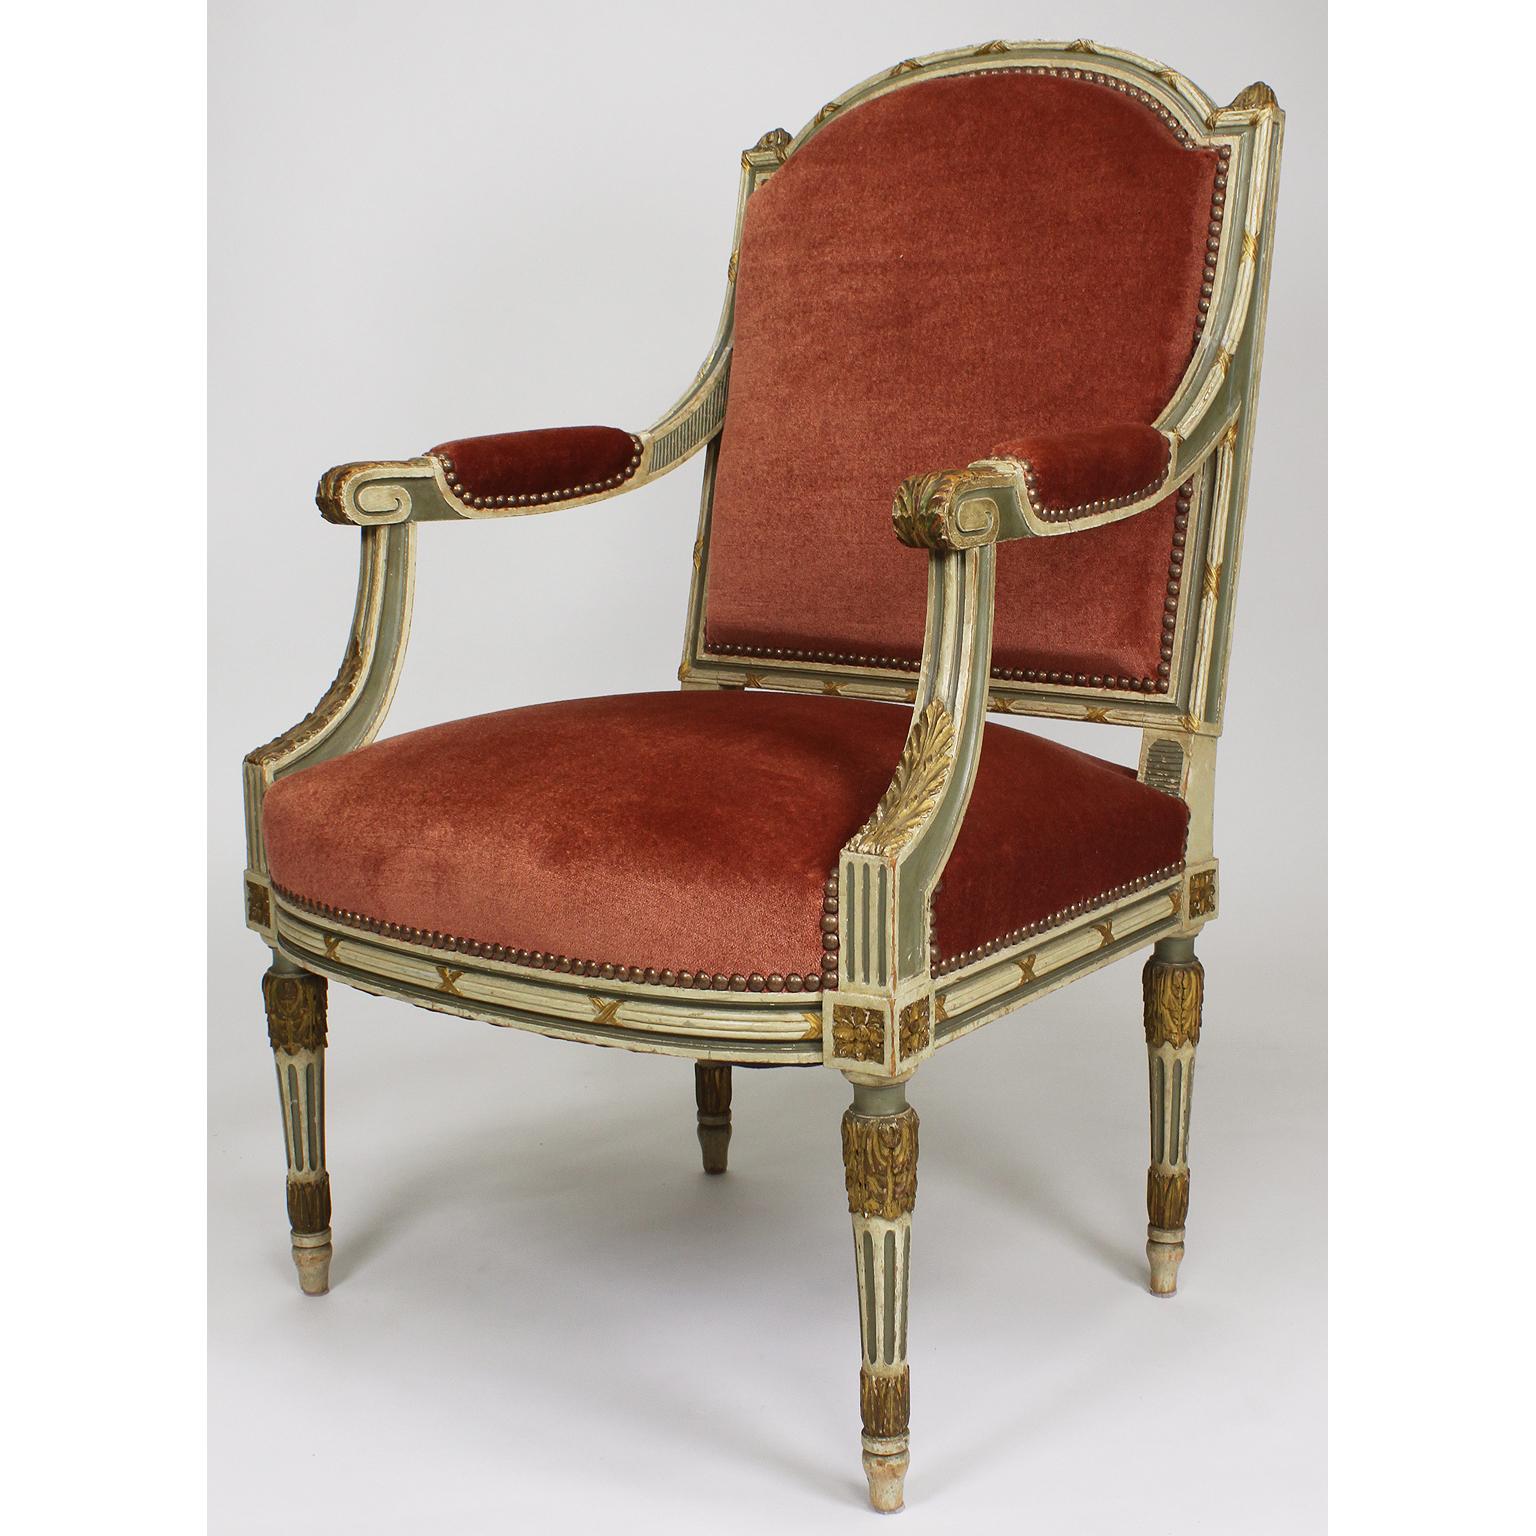 Ein feines Paar französischer Sessel im Louis-XVI-Stil des 19. und 20. Jahrhunderts, zweifarbig cremefarben und grün lackiert und mit geschnitzten Fauteuils aus Paketholz. Die kunstvoll geschnitzten Holzrahmen mit gepolsterter Rückenlehne, offenen,